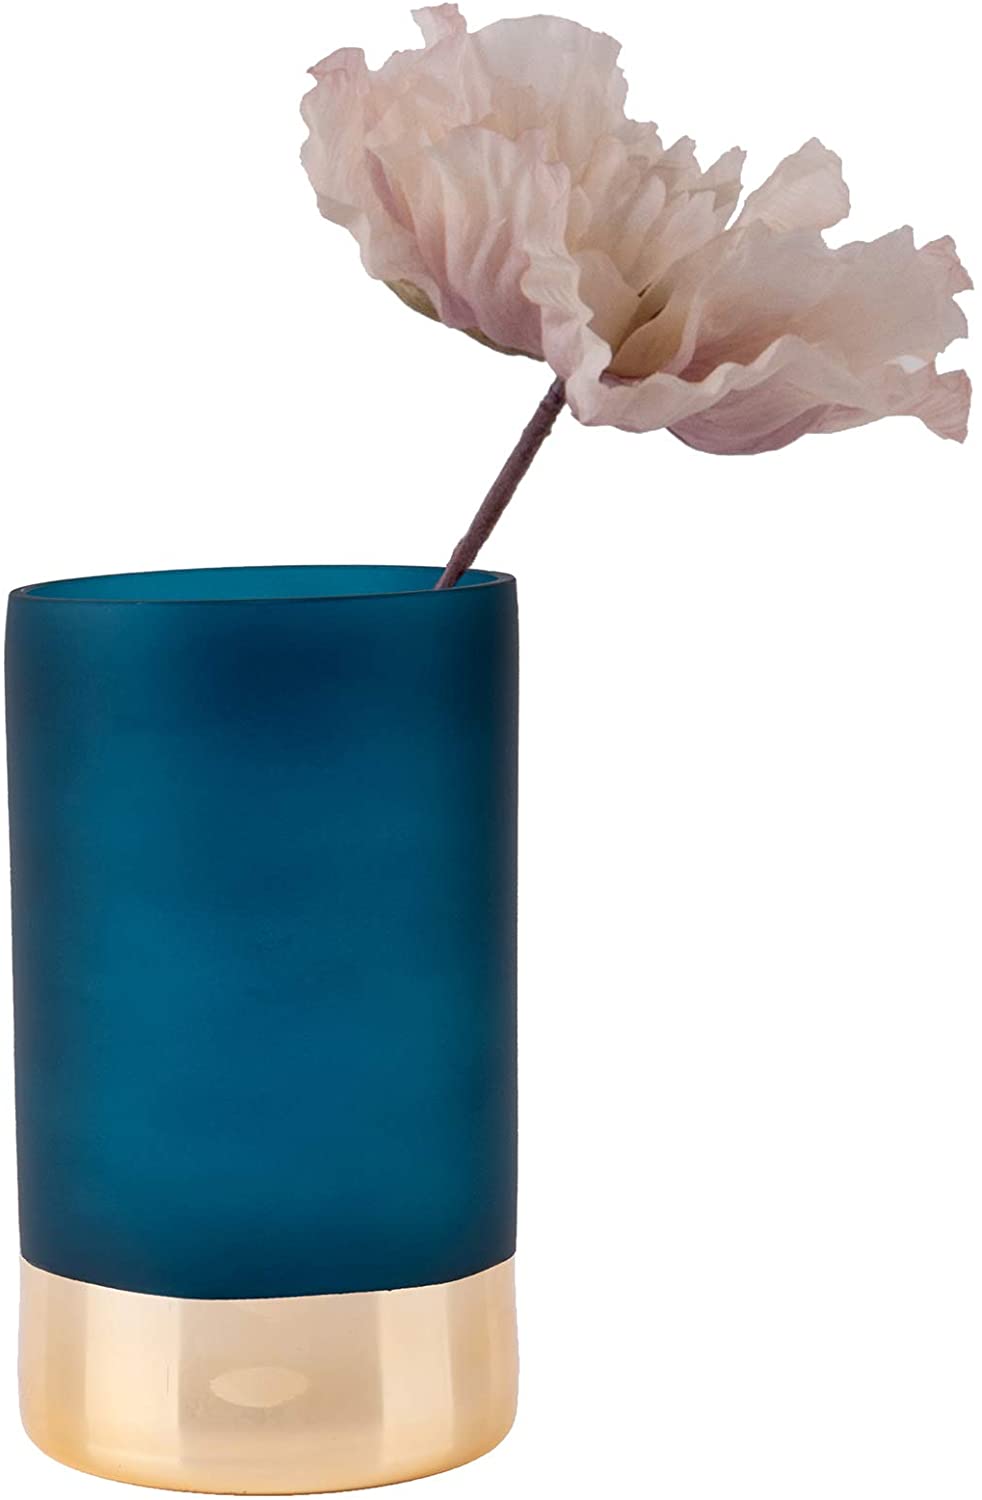 Present Time Vase Karlsson Glass Blue/Gold Large PT2883PL Cod. 9840